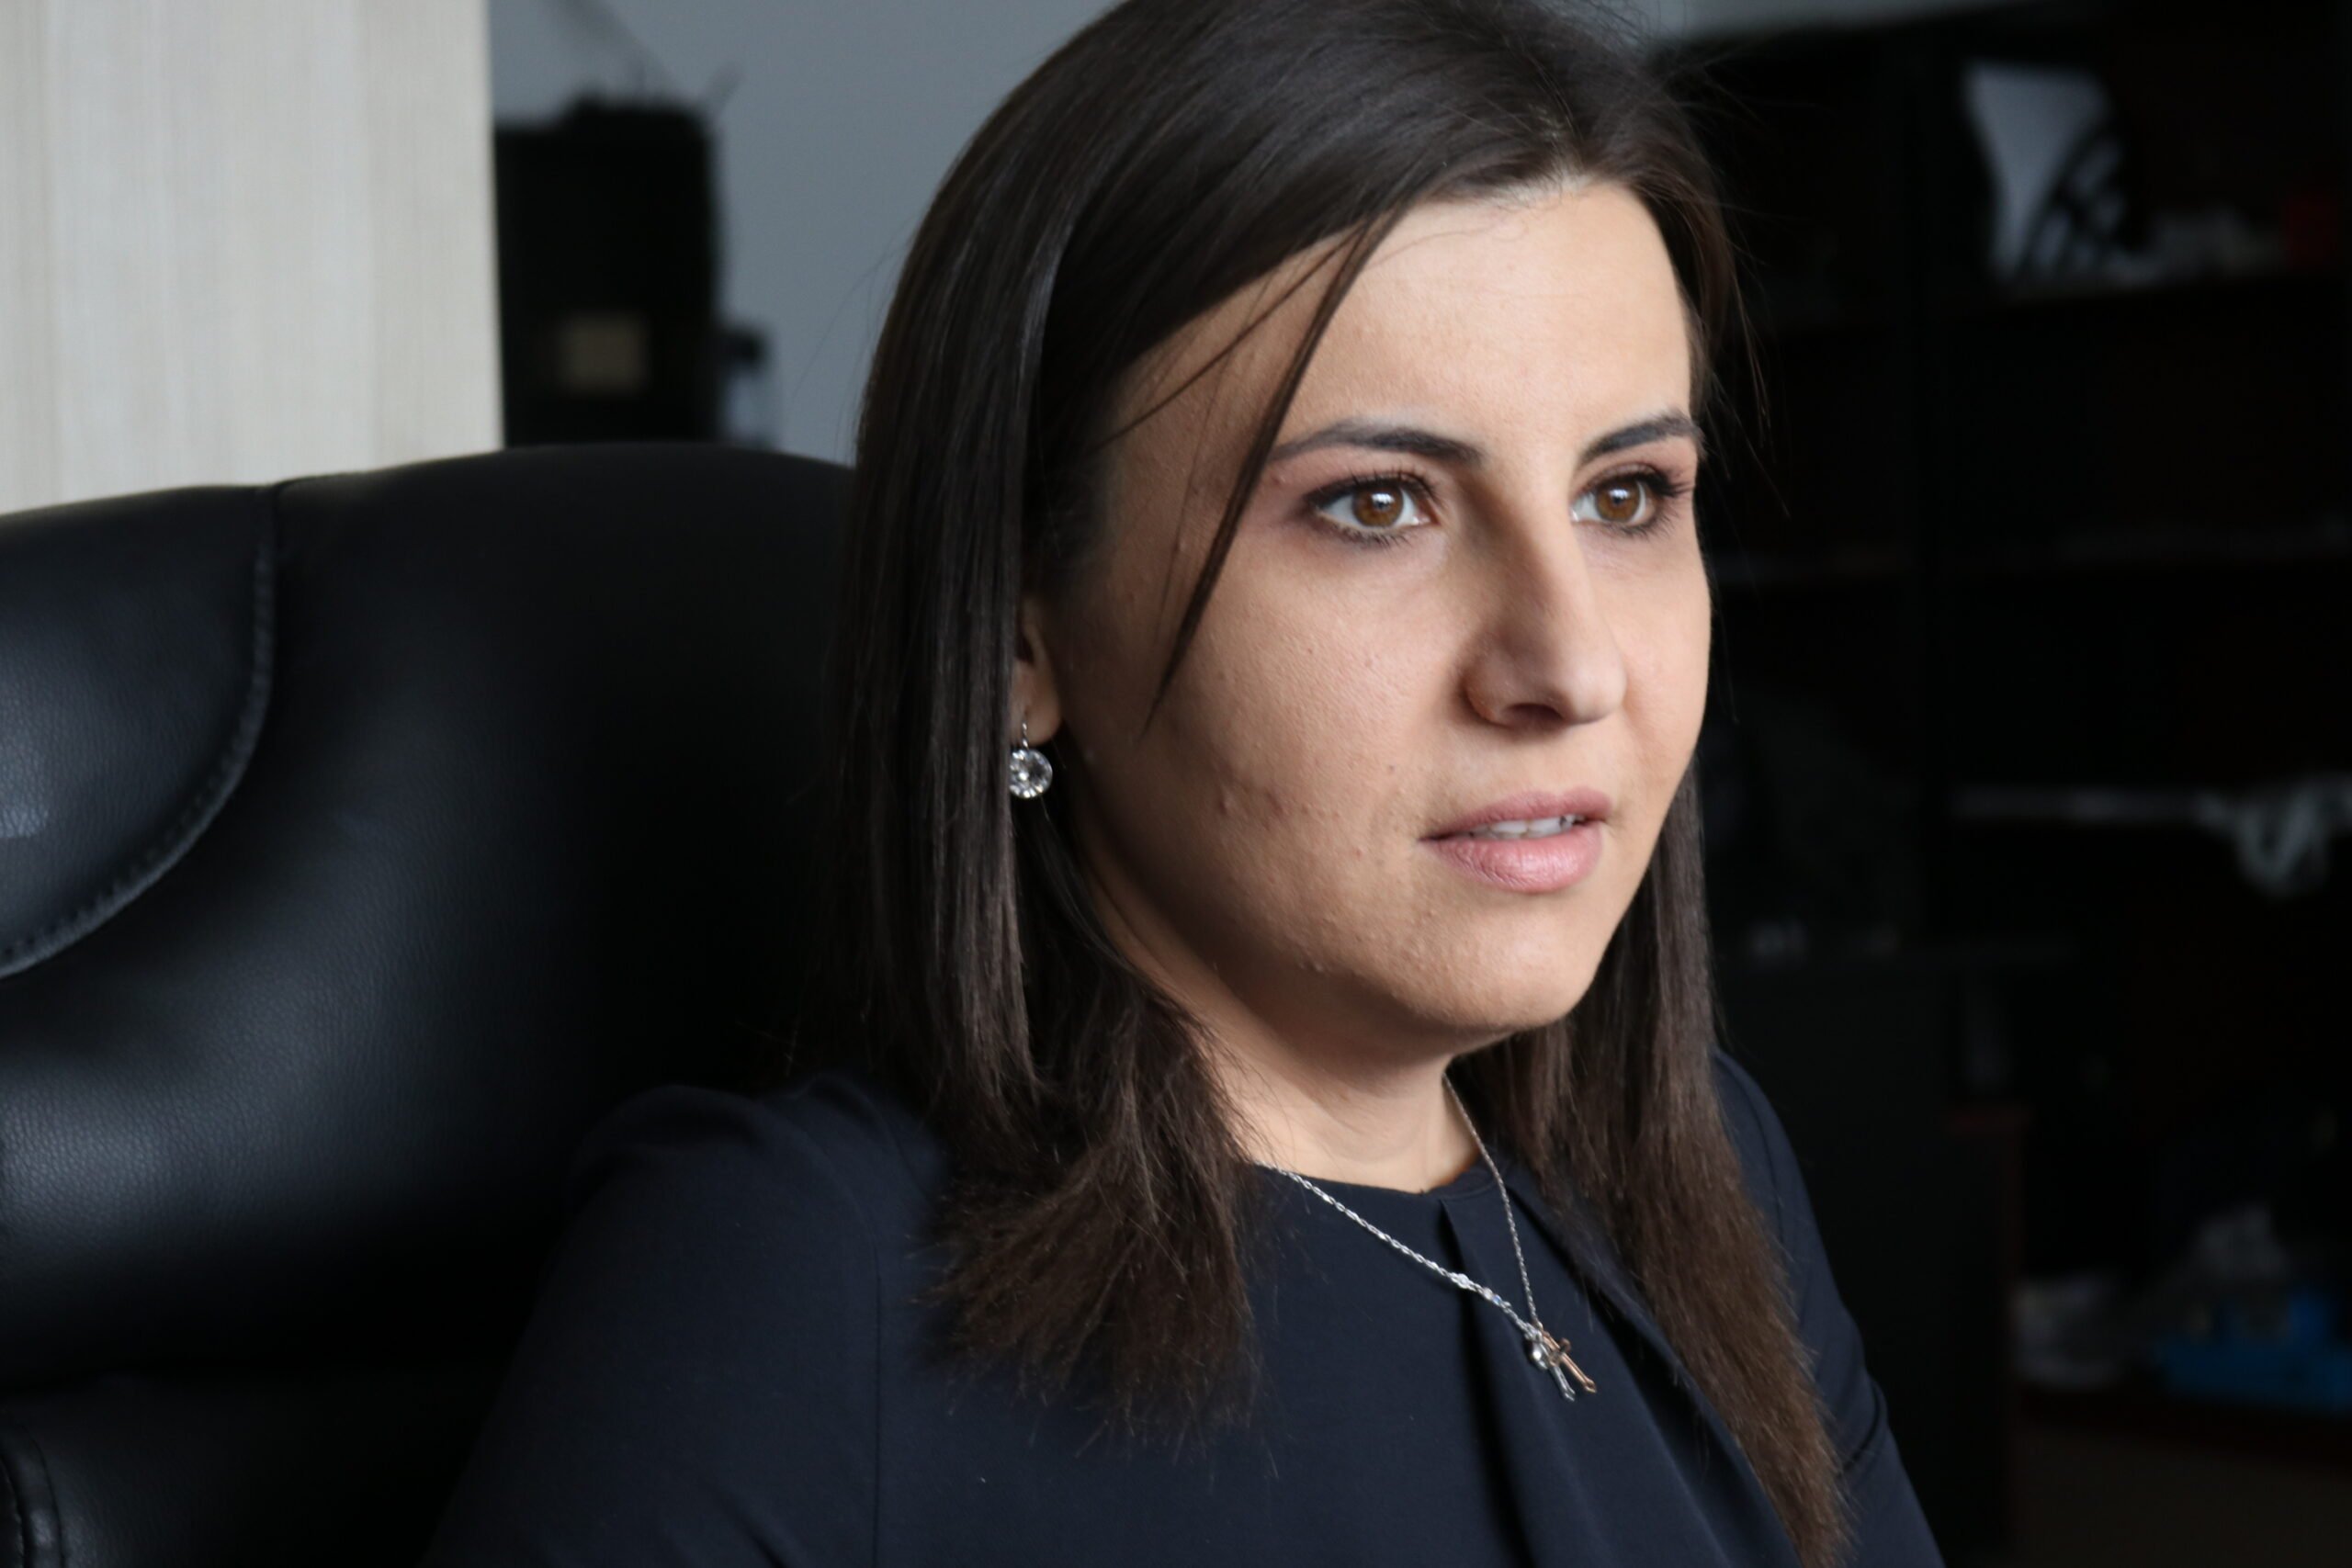  Ioana Constantin, vicepreşedinte PMP, exclude orice fel de discuţii cu AUR